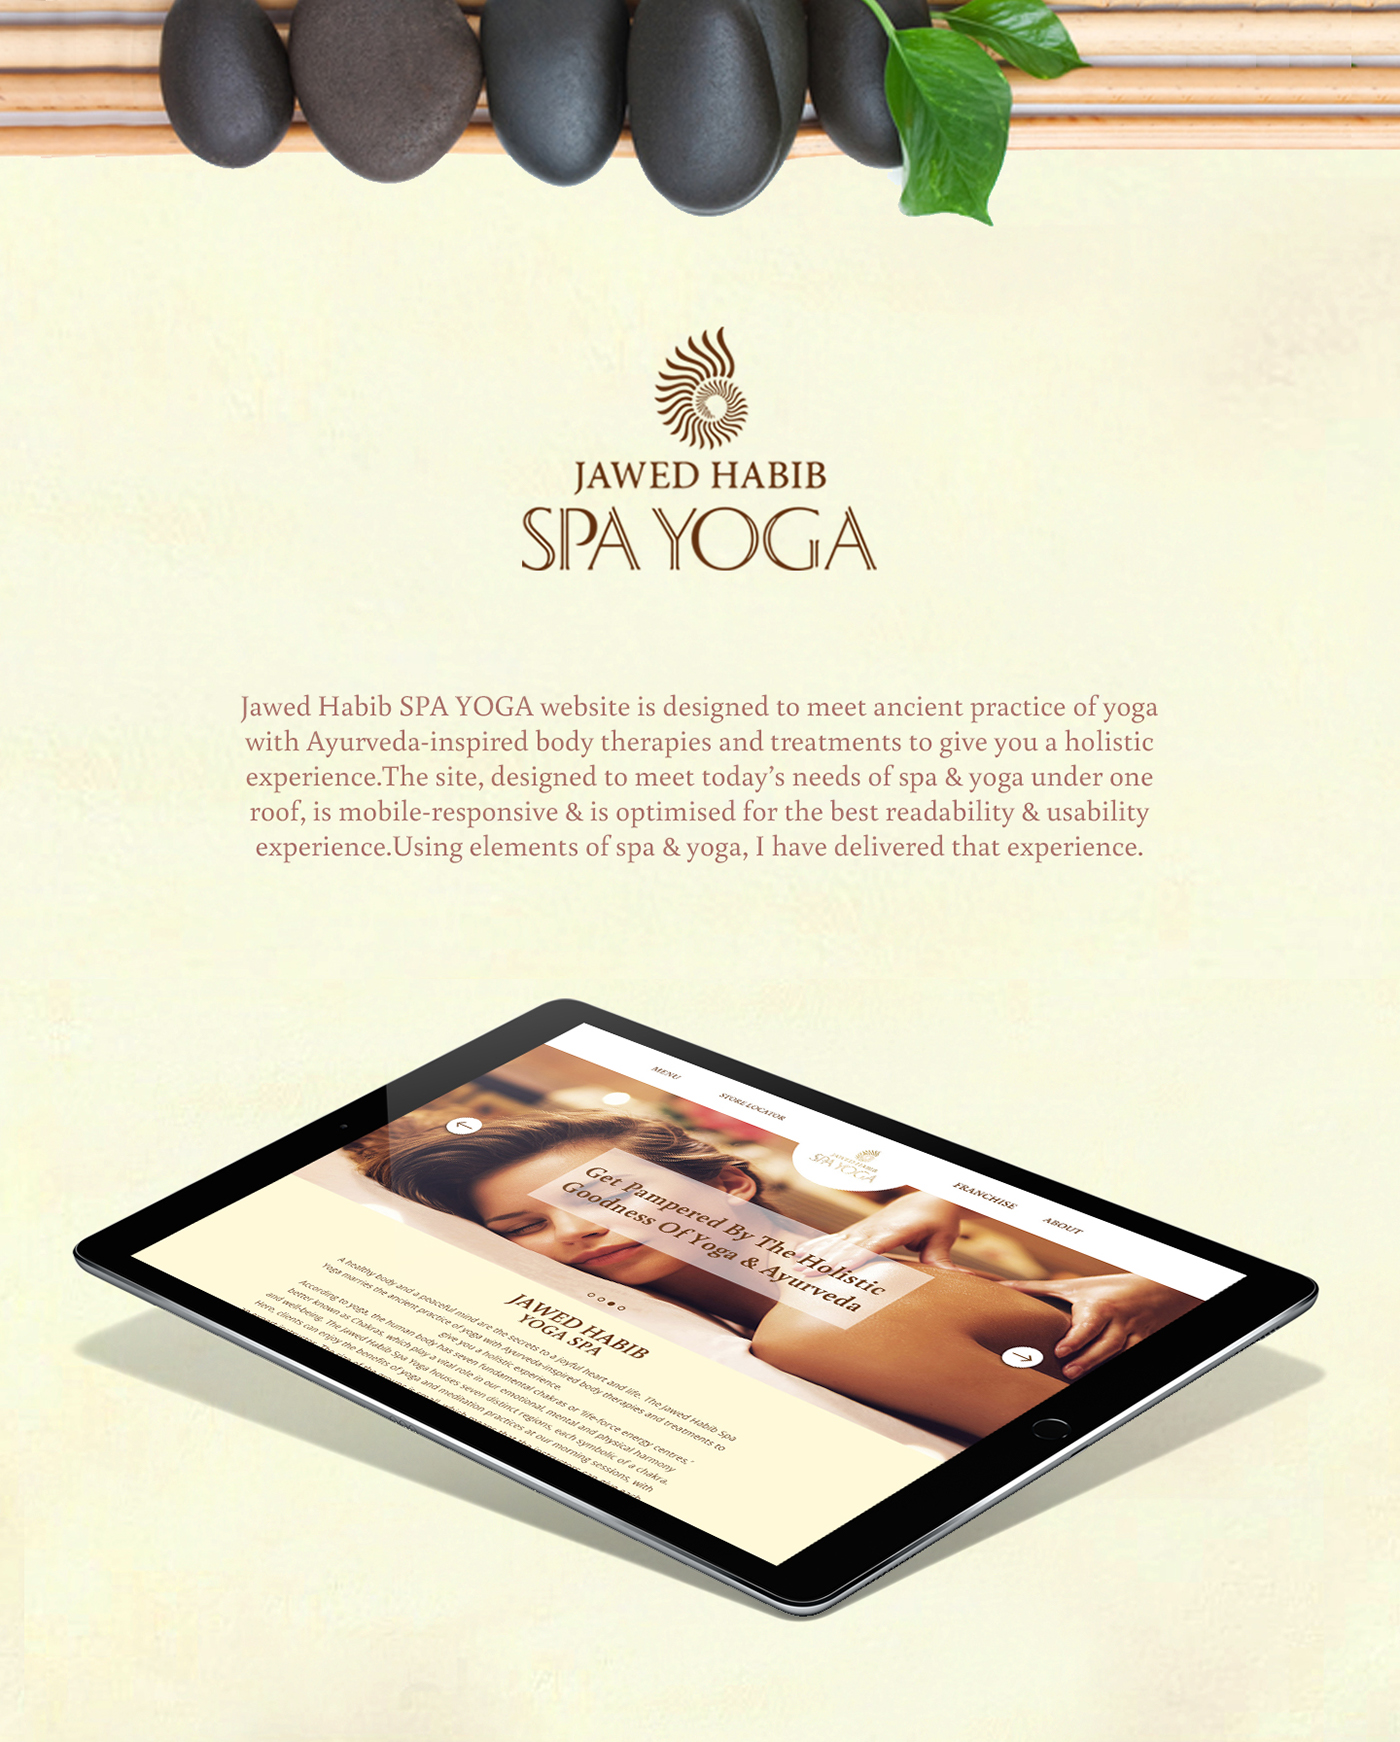 Spa Yoga Webdesign ui design Responsive Design mobile design Usability readability